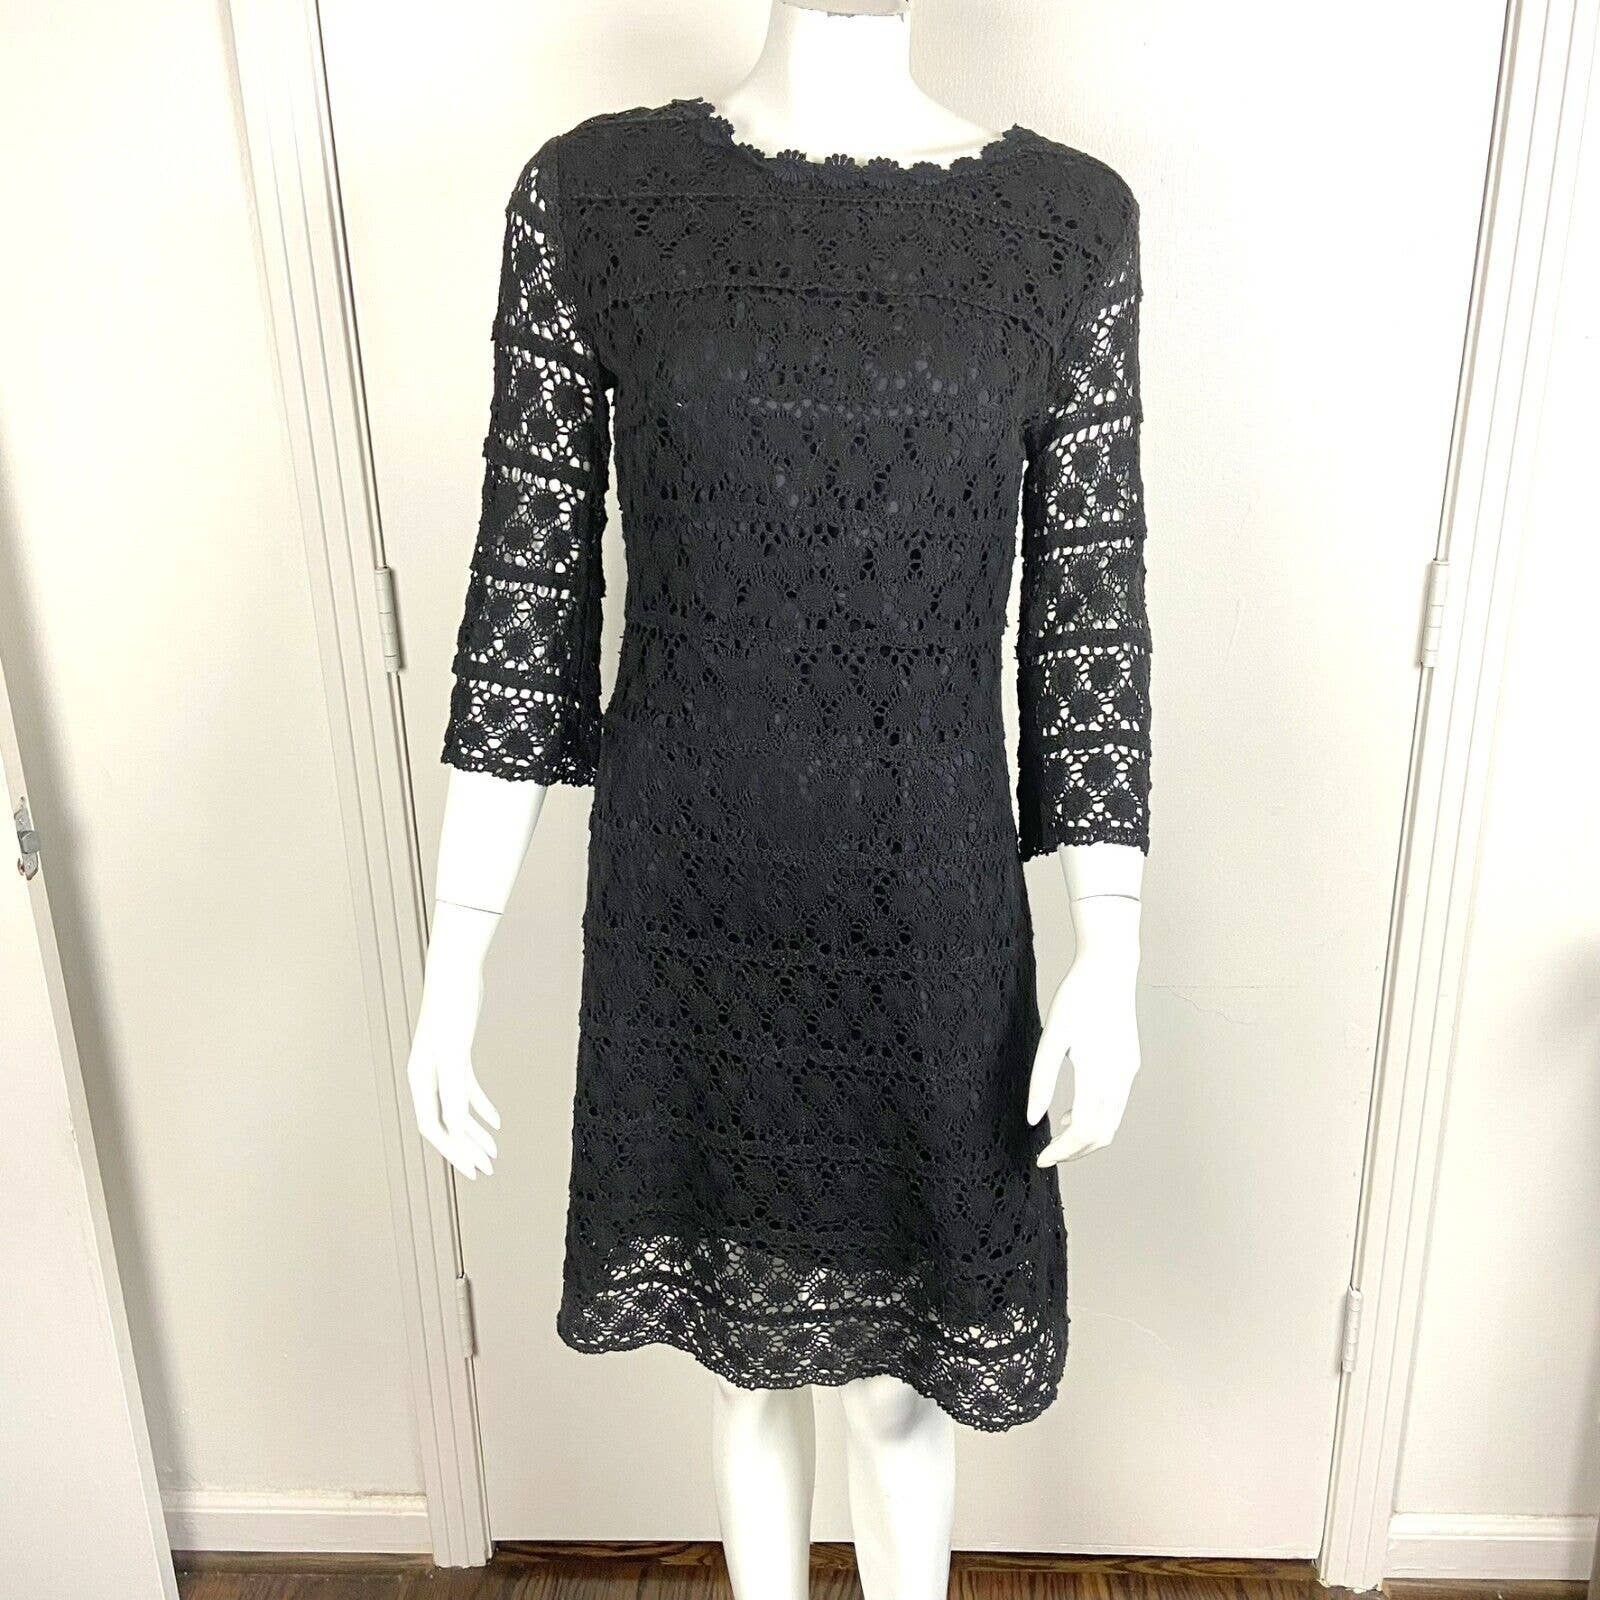 Handmade Vintage 60s 70s Black Crochet Lace Mini Shift Dress Size S / US 4 / IT 40 - 2 Preview